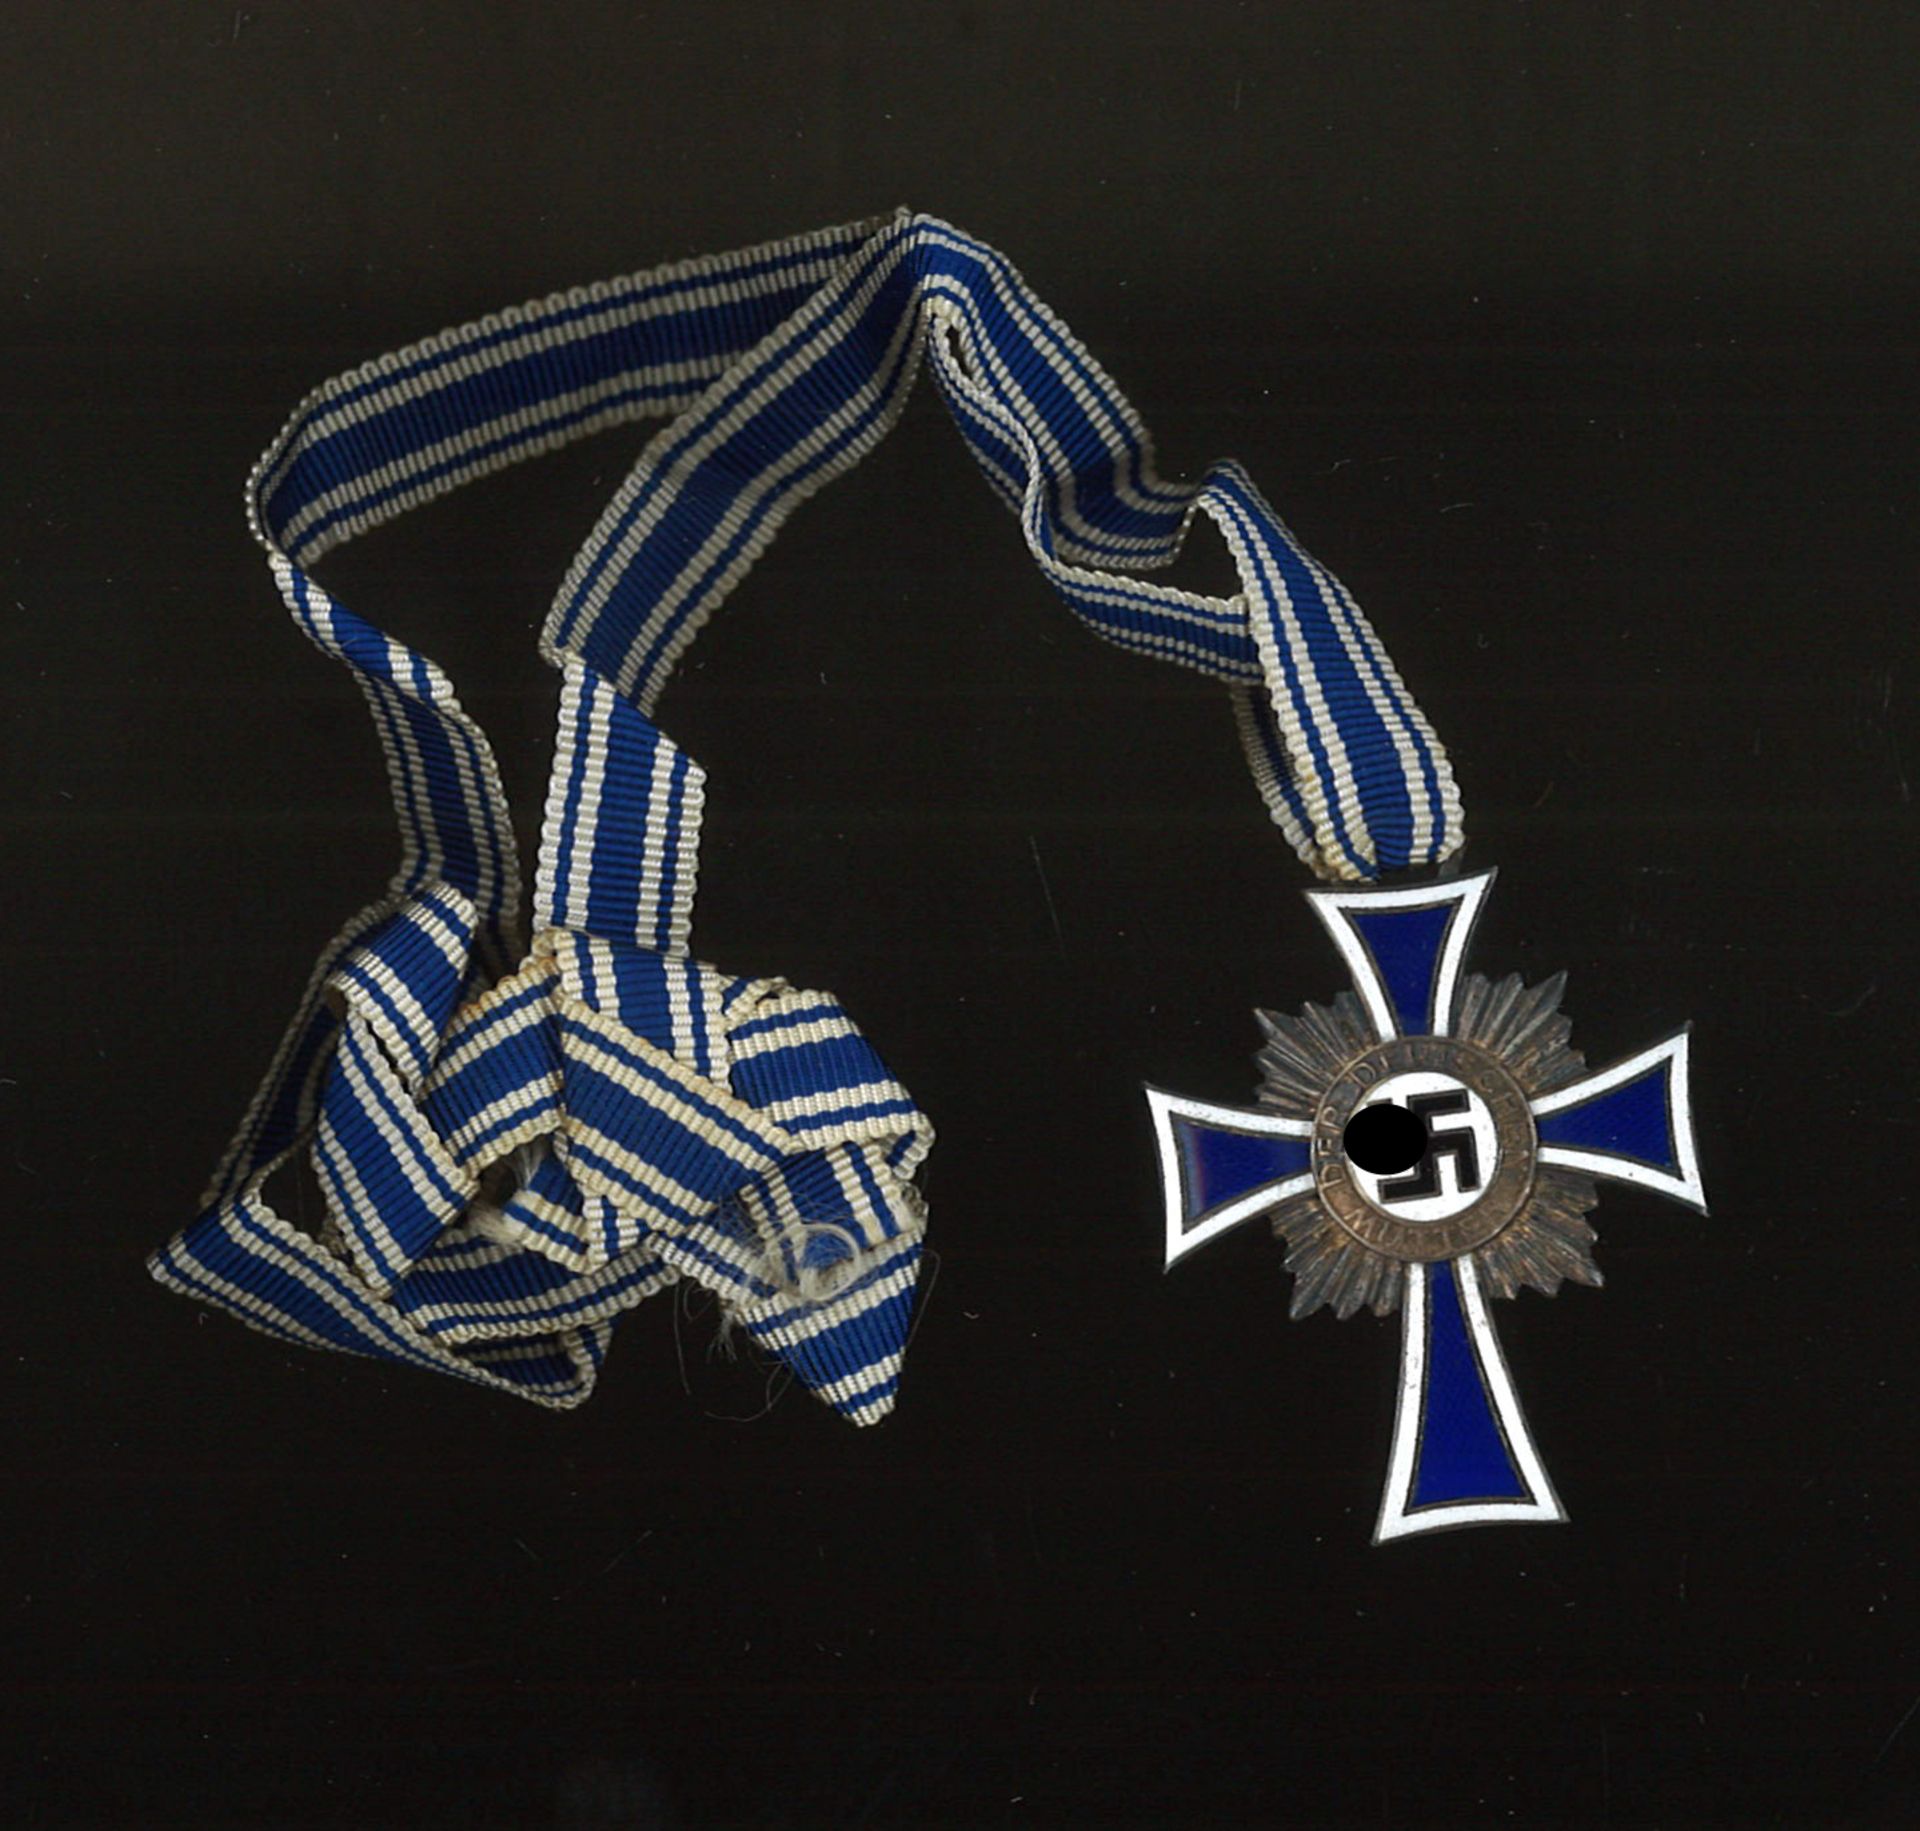 3. Reich, Mutterkreuz in Bronze, 3. Stufe mit Verleihungstüte, diese starke Gebrauchsspuren. - Image 2 of 3